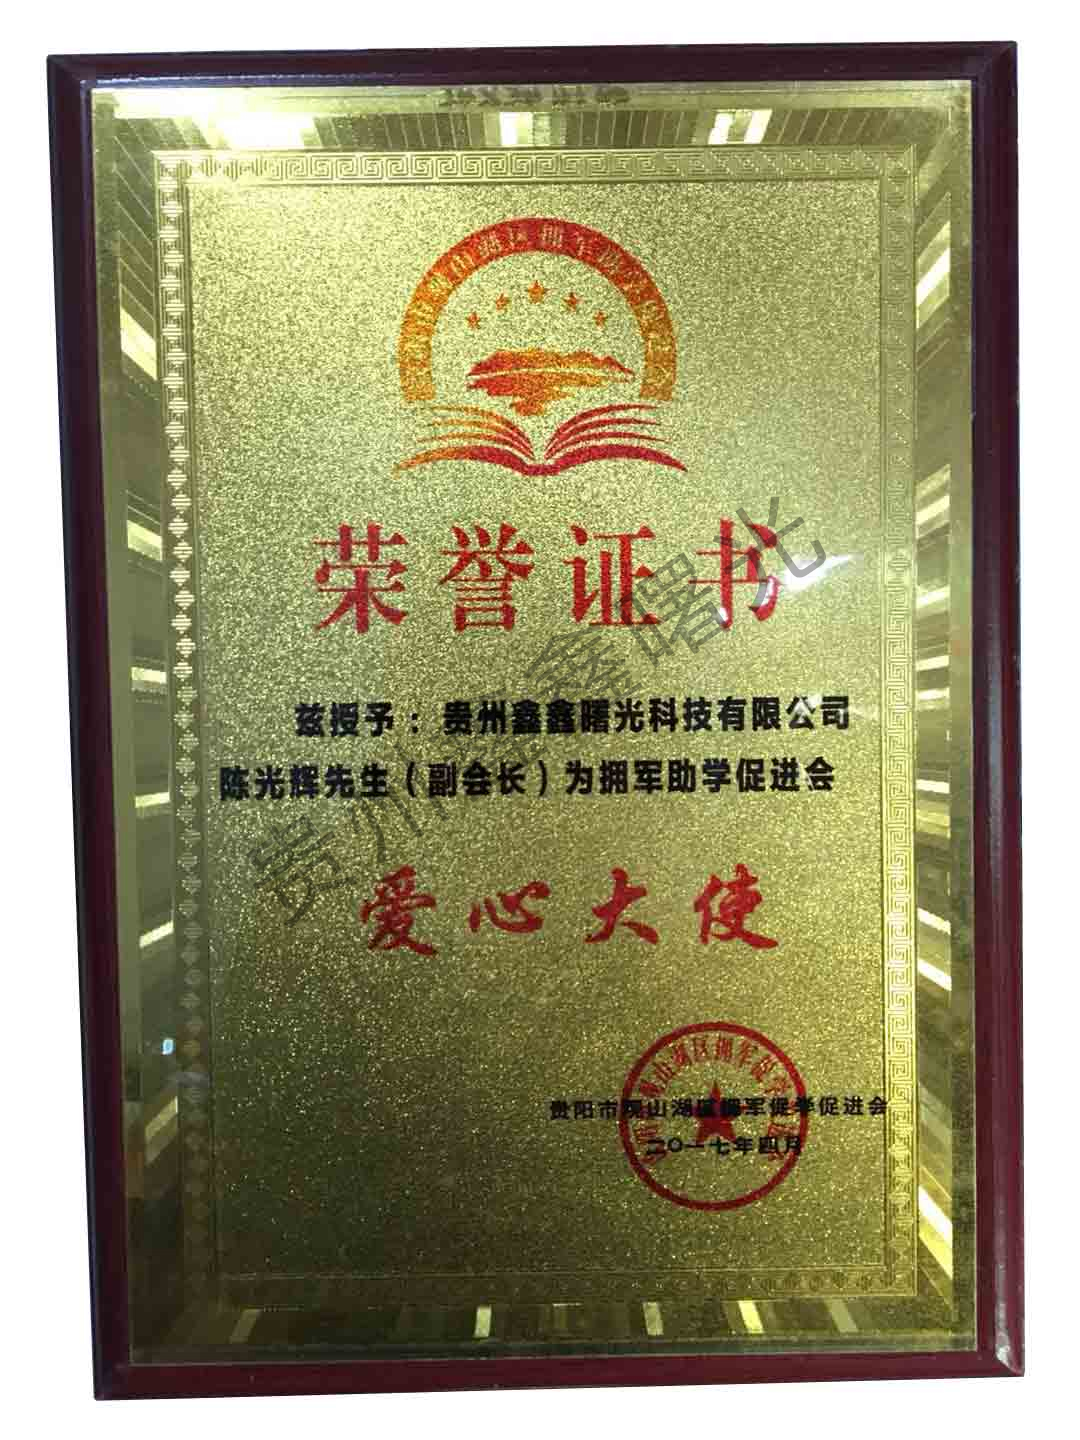 企业荣誉-南京南化建设有限公司